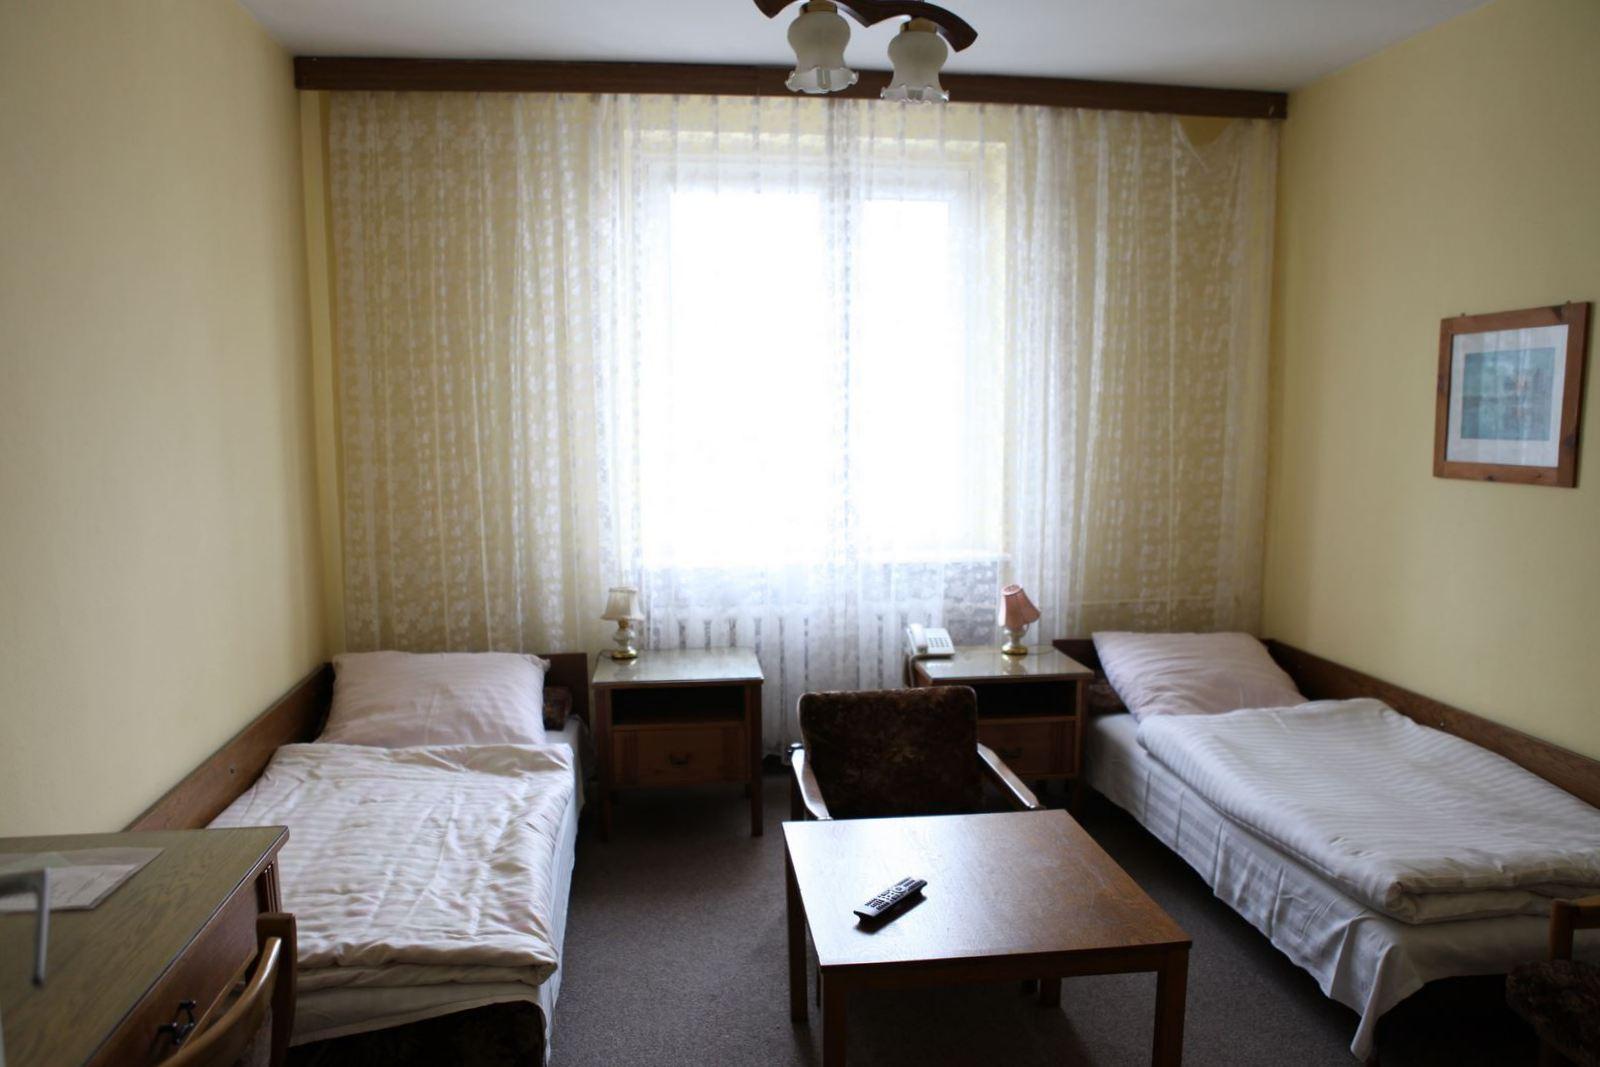 Dwa łóżka w pokoju hotelowym